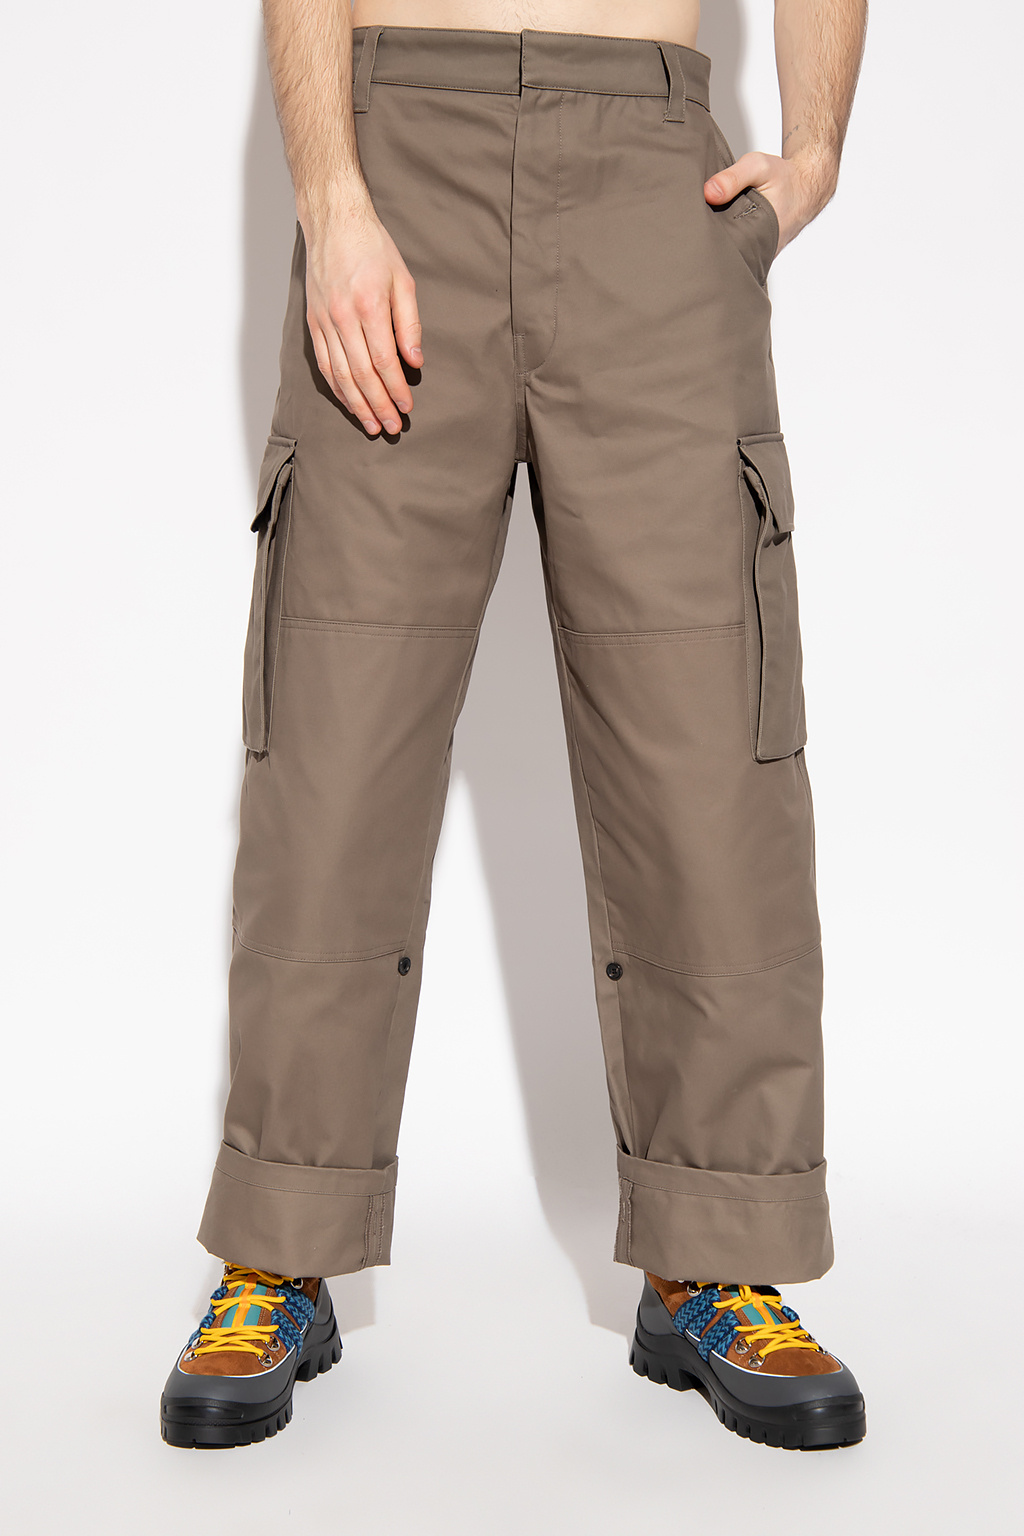 Loewe Cargo trousers | Men's Clothing | Vitkac